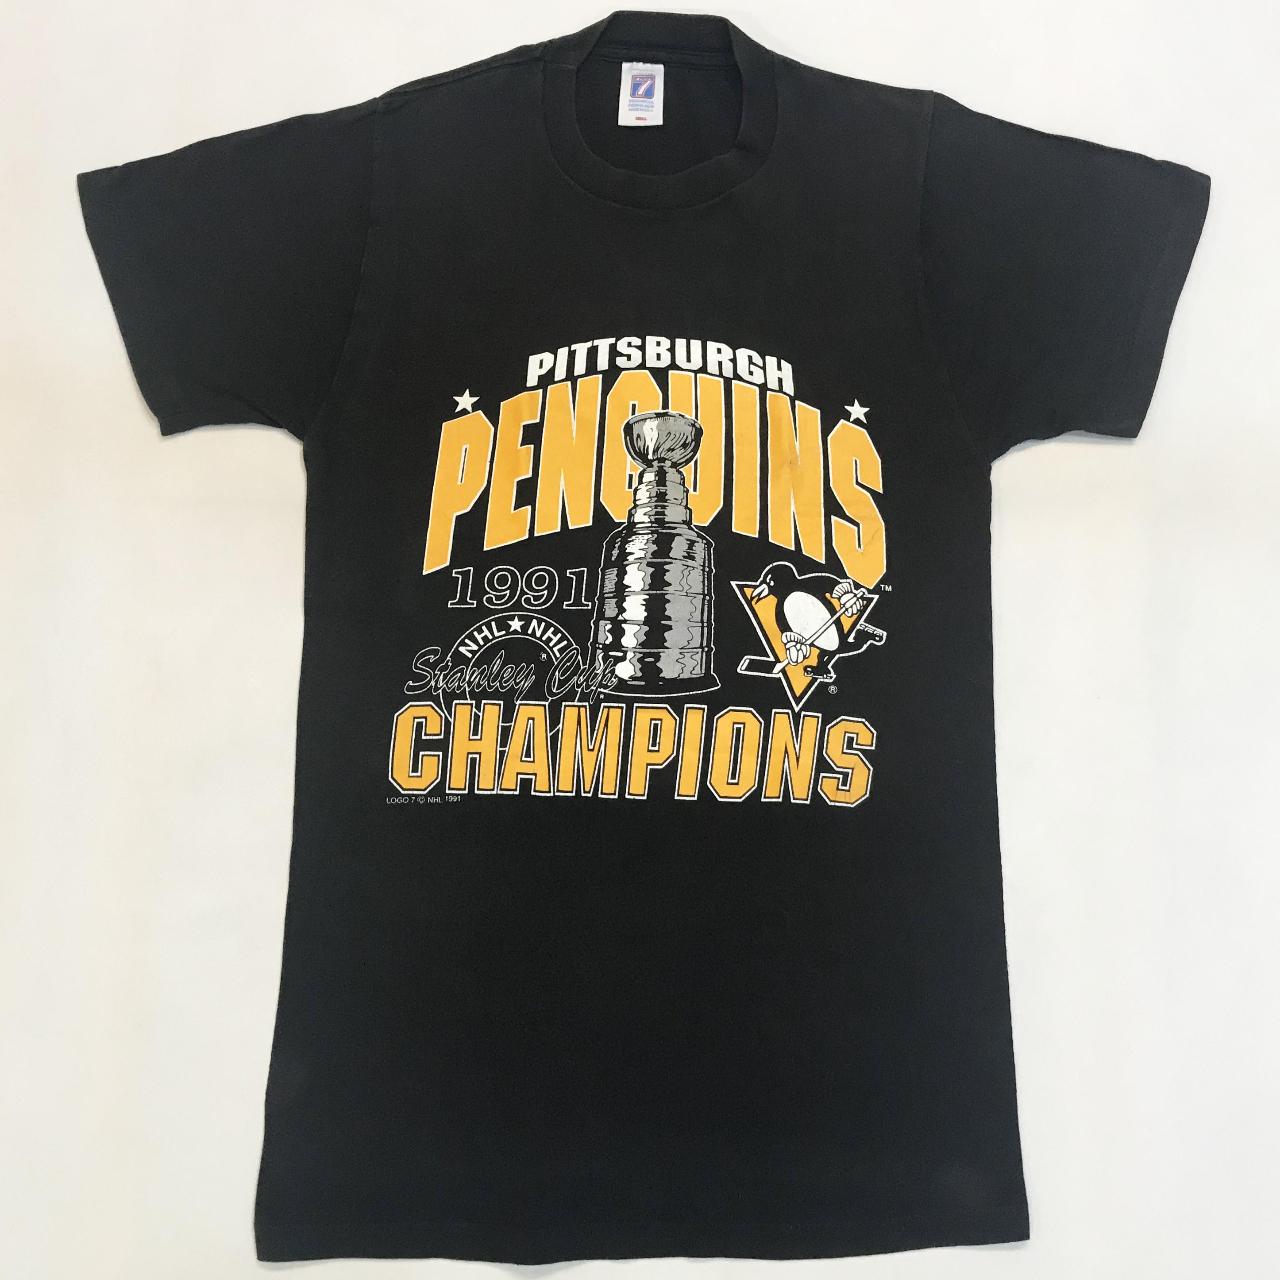 Vintage 90's Logo 7 NHL Pittsburgh Penguins Jager - Depop